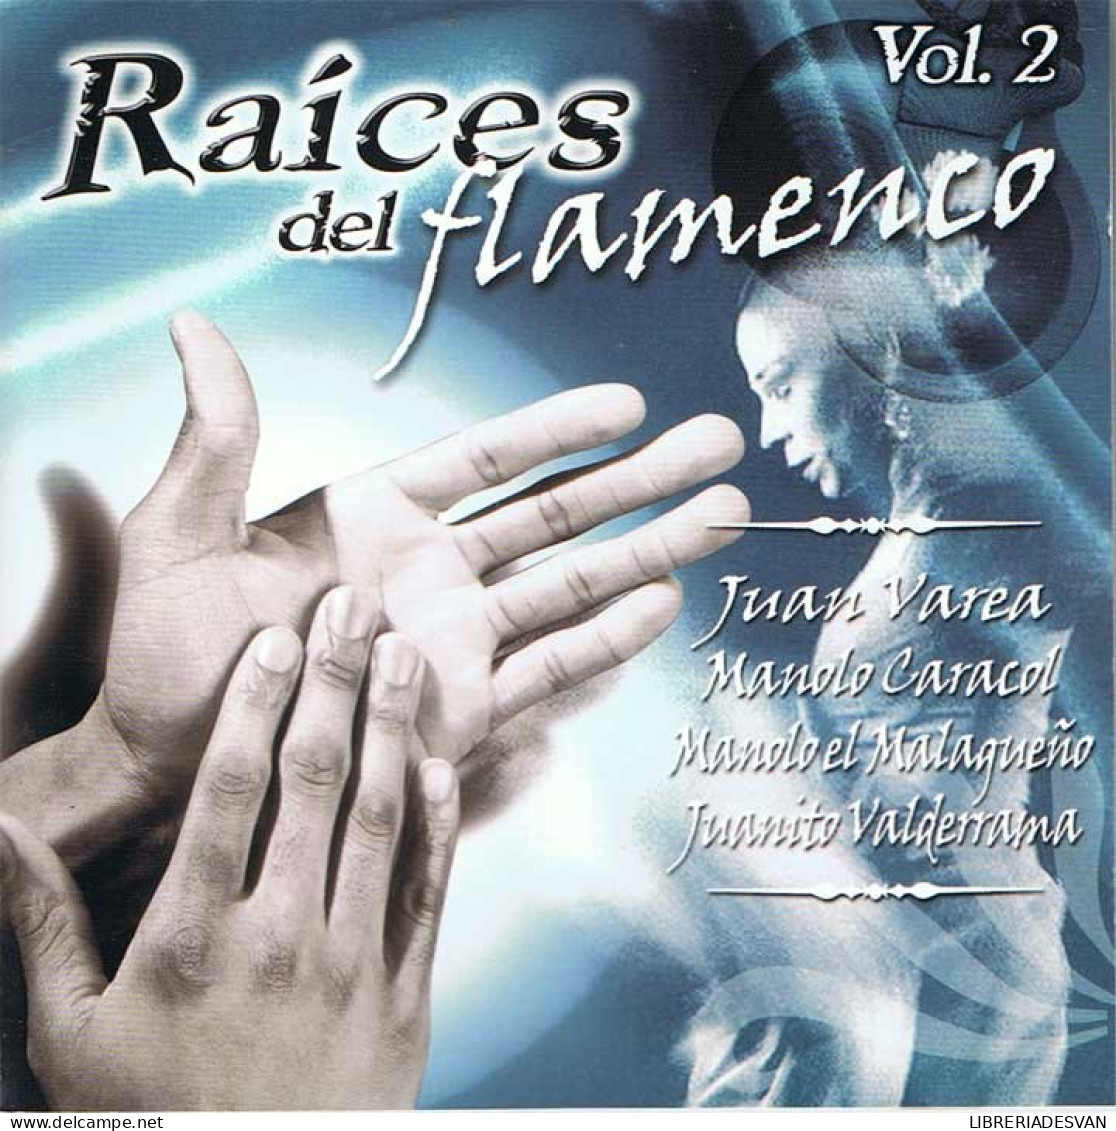 Raíces Del Flamenco Vol. 2 - Juan Varea, Manolo Caracol, Manolo El Malagueño, Juanito Valderrama - OK 2004 - Sonstige - Spanische Musik